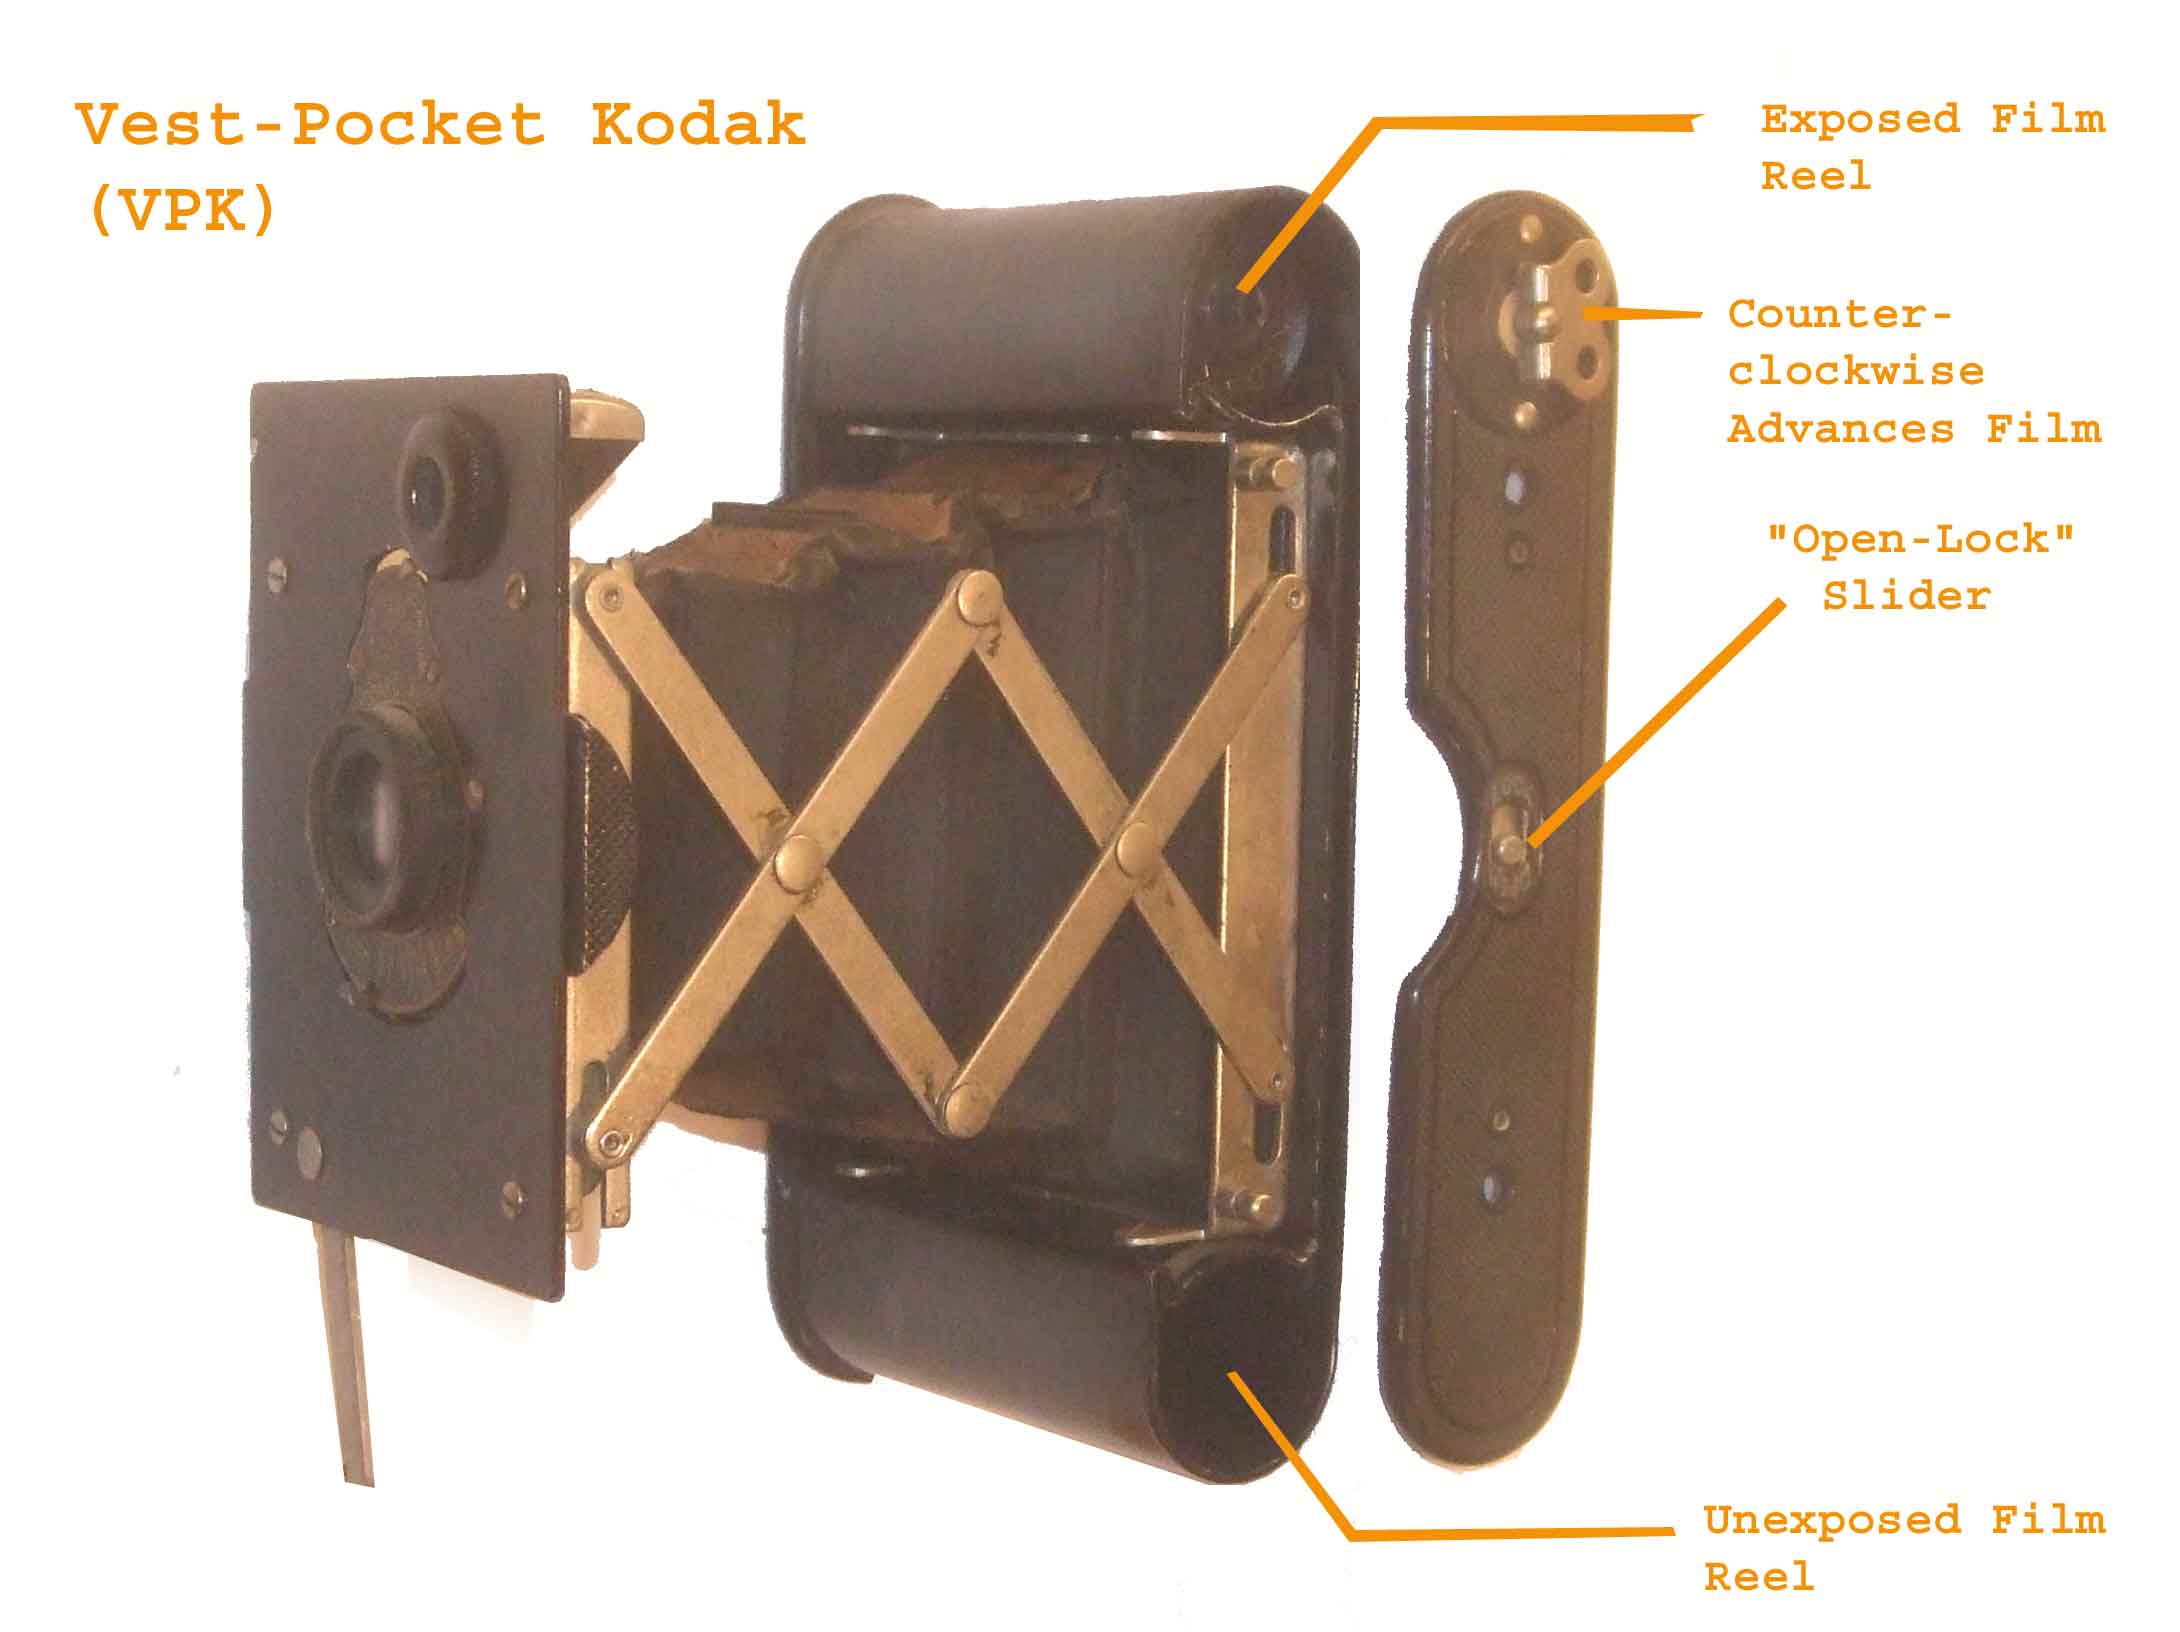 фотокамера « Kodak» которая использовалась Мэллори и Ирвином в 1924 году